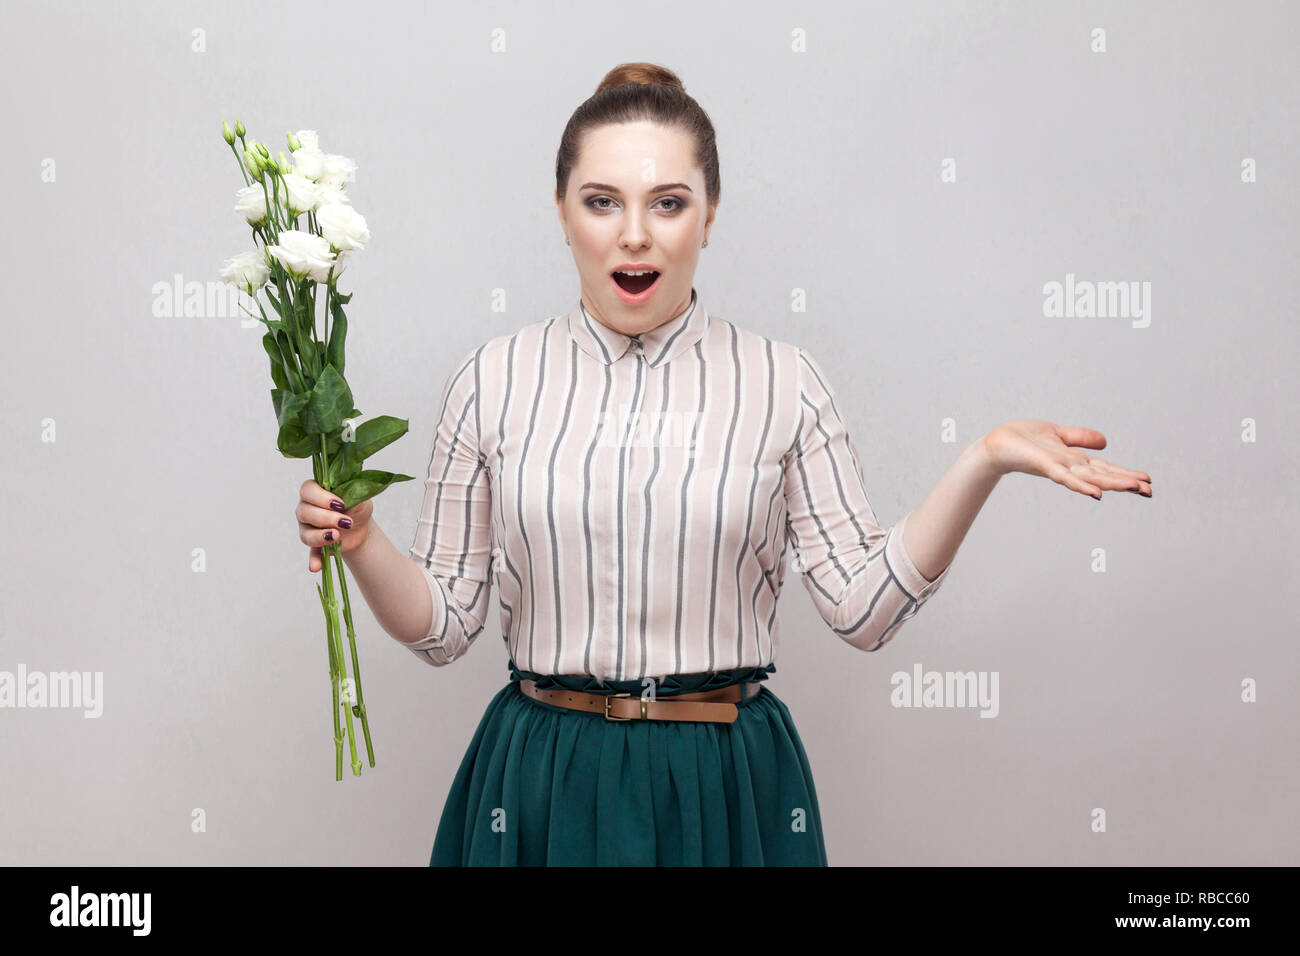 Increíble. Retrato de mujer joven romántico sorprendió en camisa a rayas y falda verde celebración bouquet de flores blancas con brazos levantados. Interior, St. Foto de stock